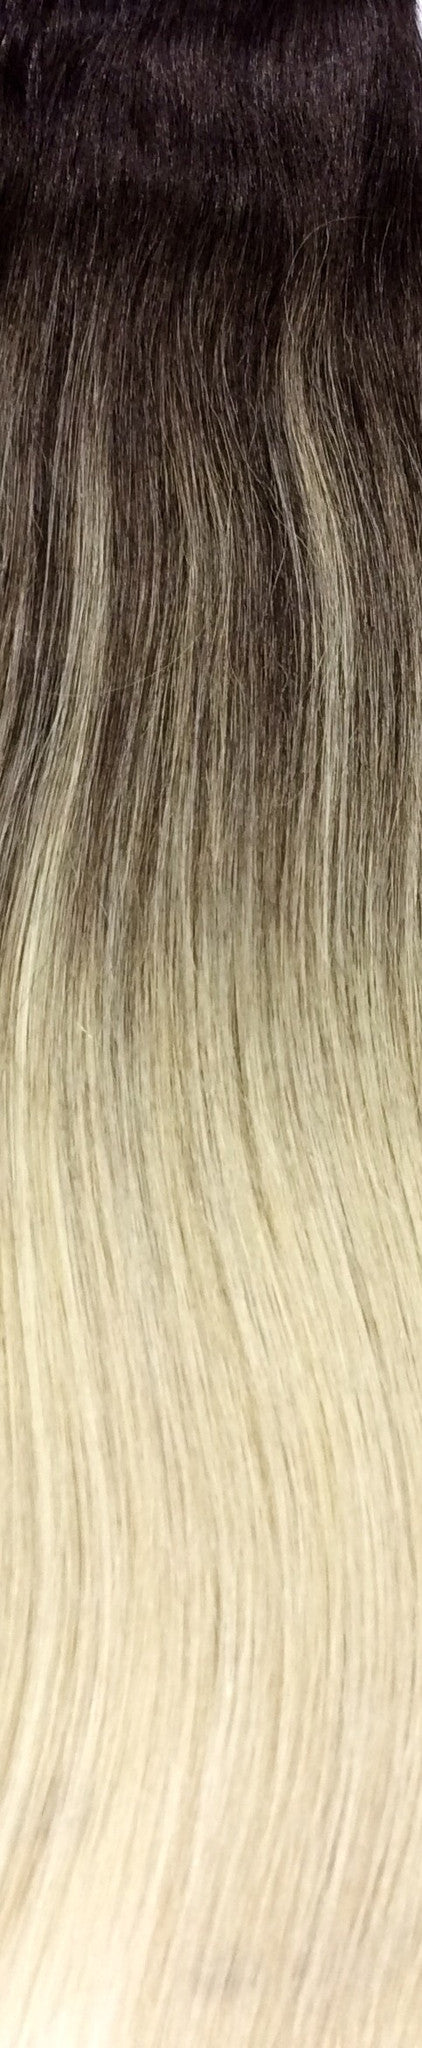 18" 100% Human Hair 7pcs Clip-In Balayage Color B2/22